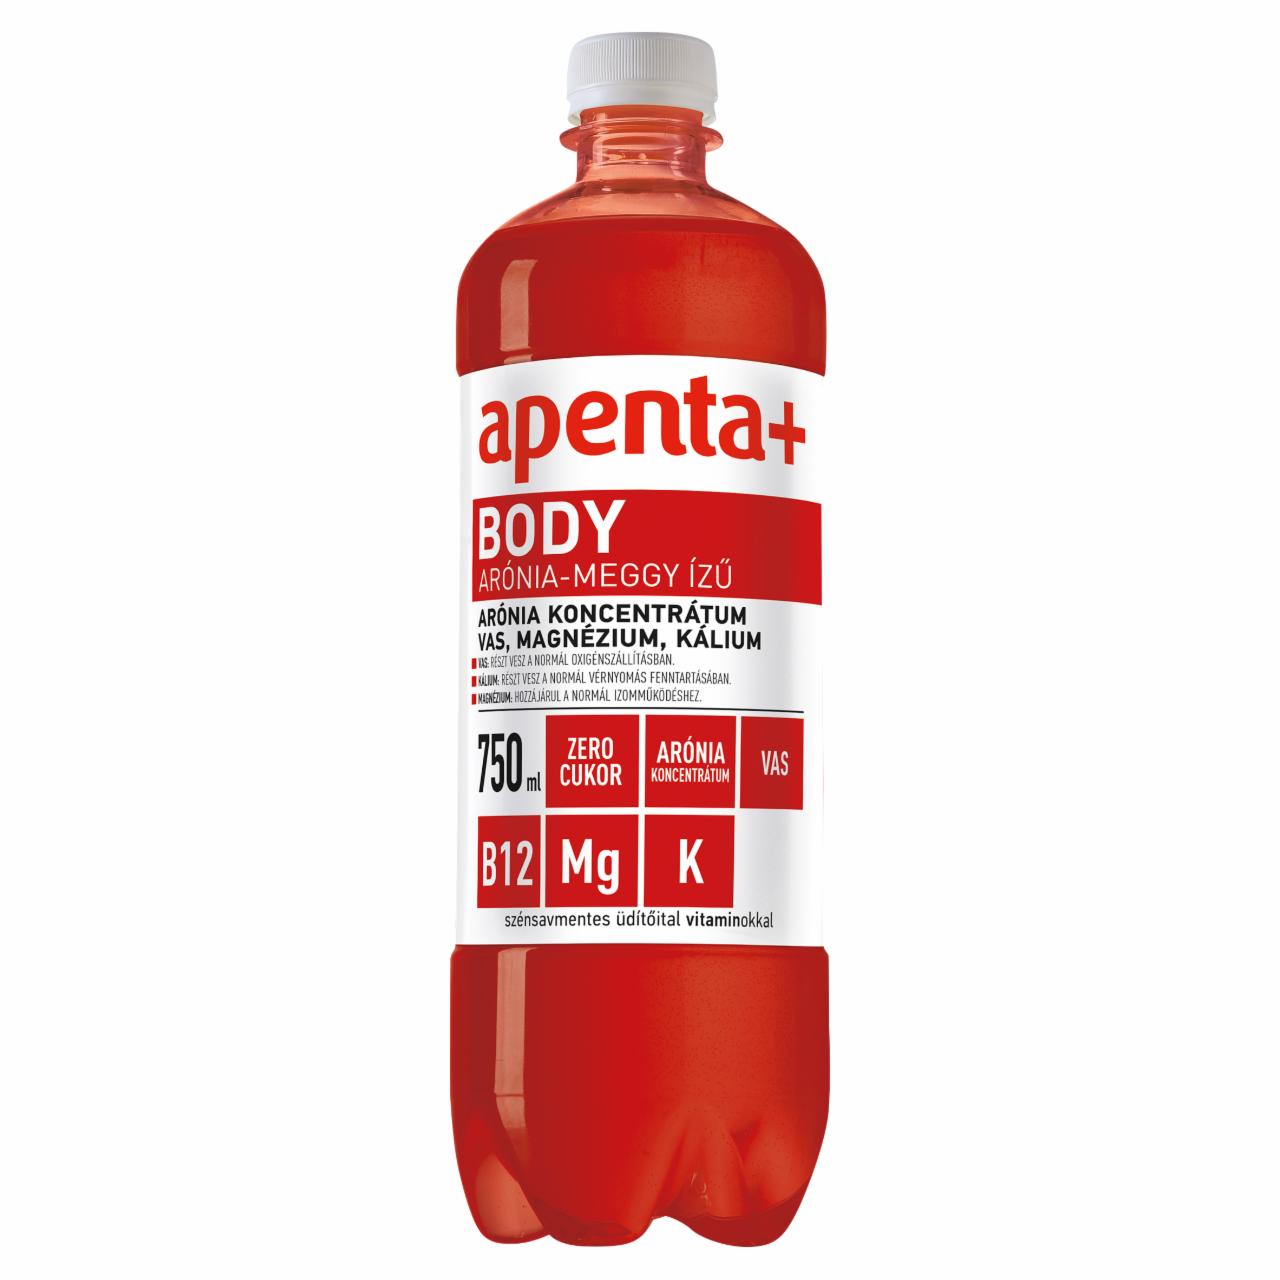 Képek - Apenta+ Body arónia-meggy ízű szénsavmentes üdítőital édesítőszerekkel, vitaminokkal 750 ml